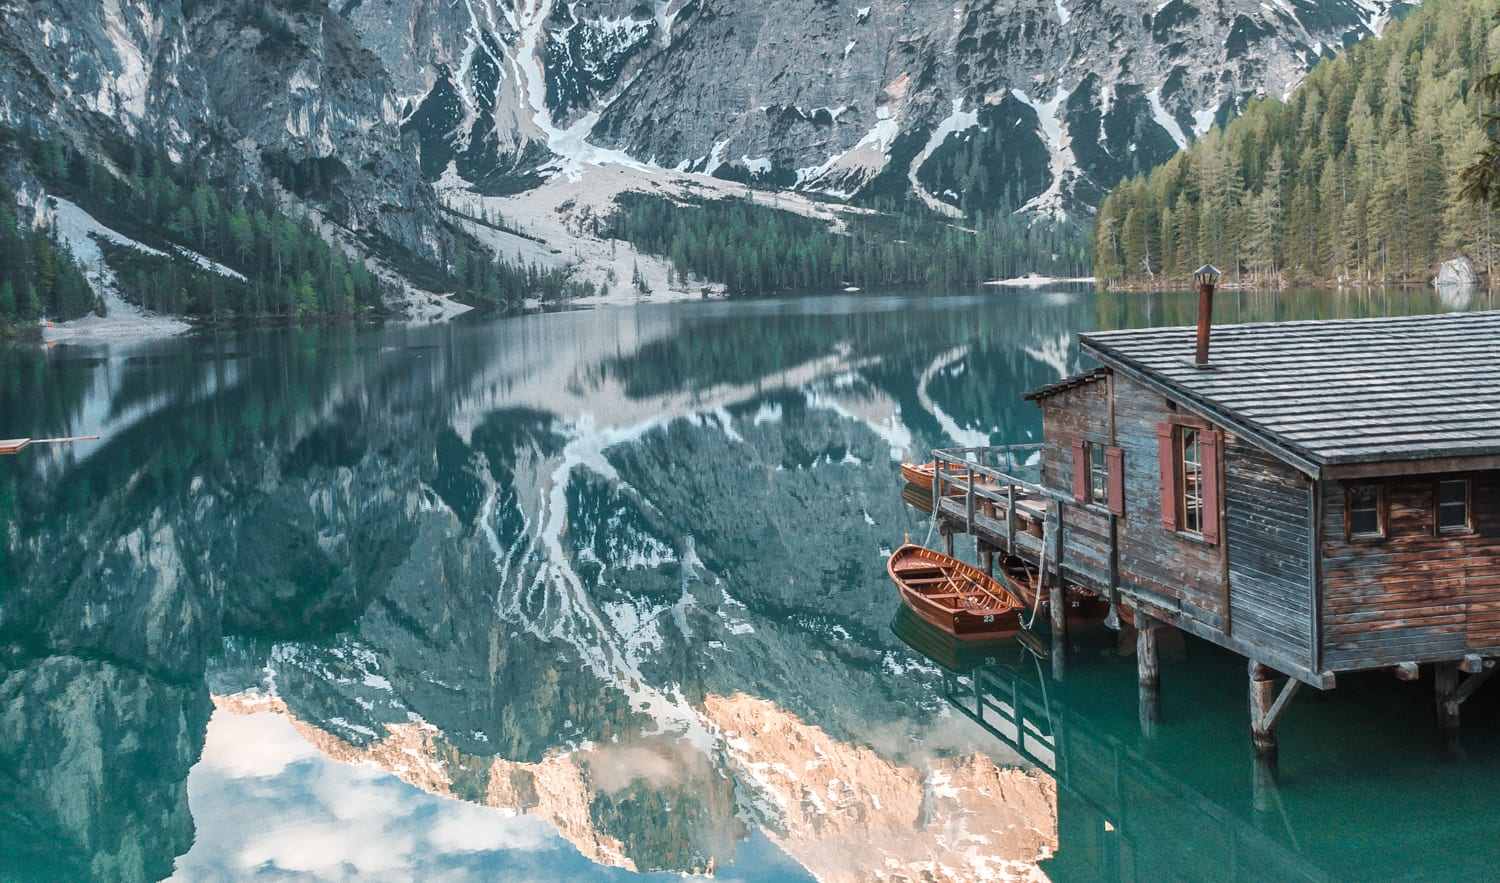 意大利最美湖泊:布雷斯湖